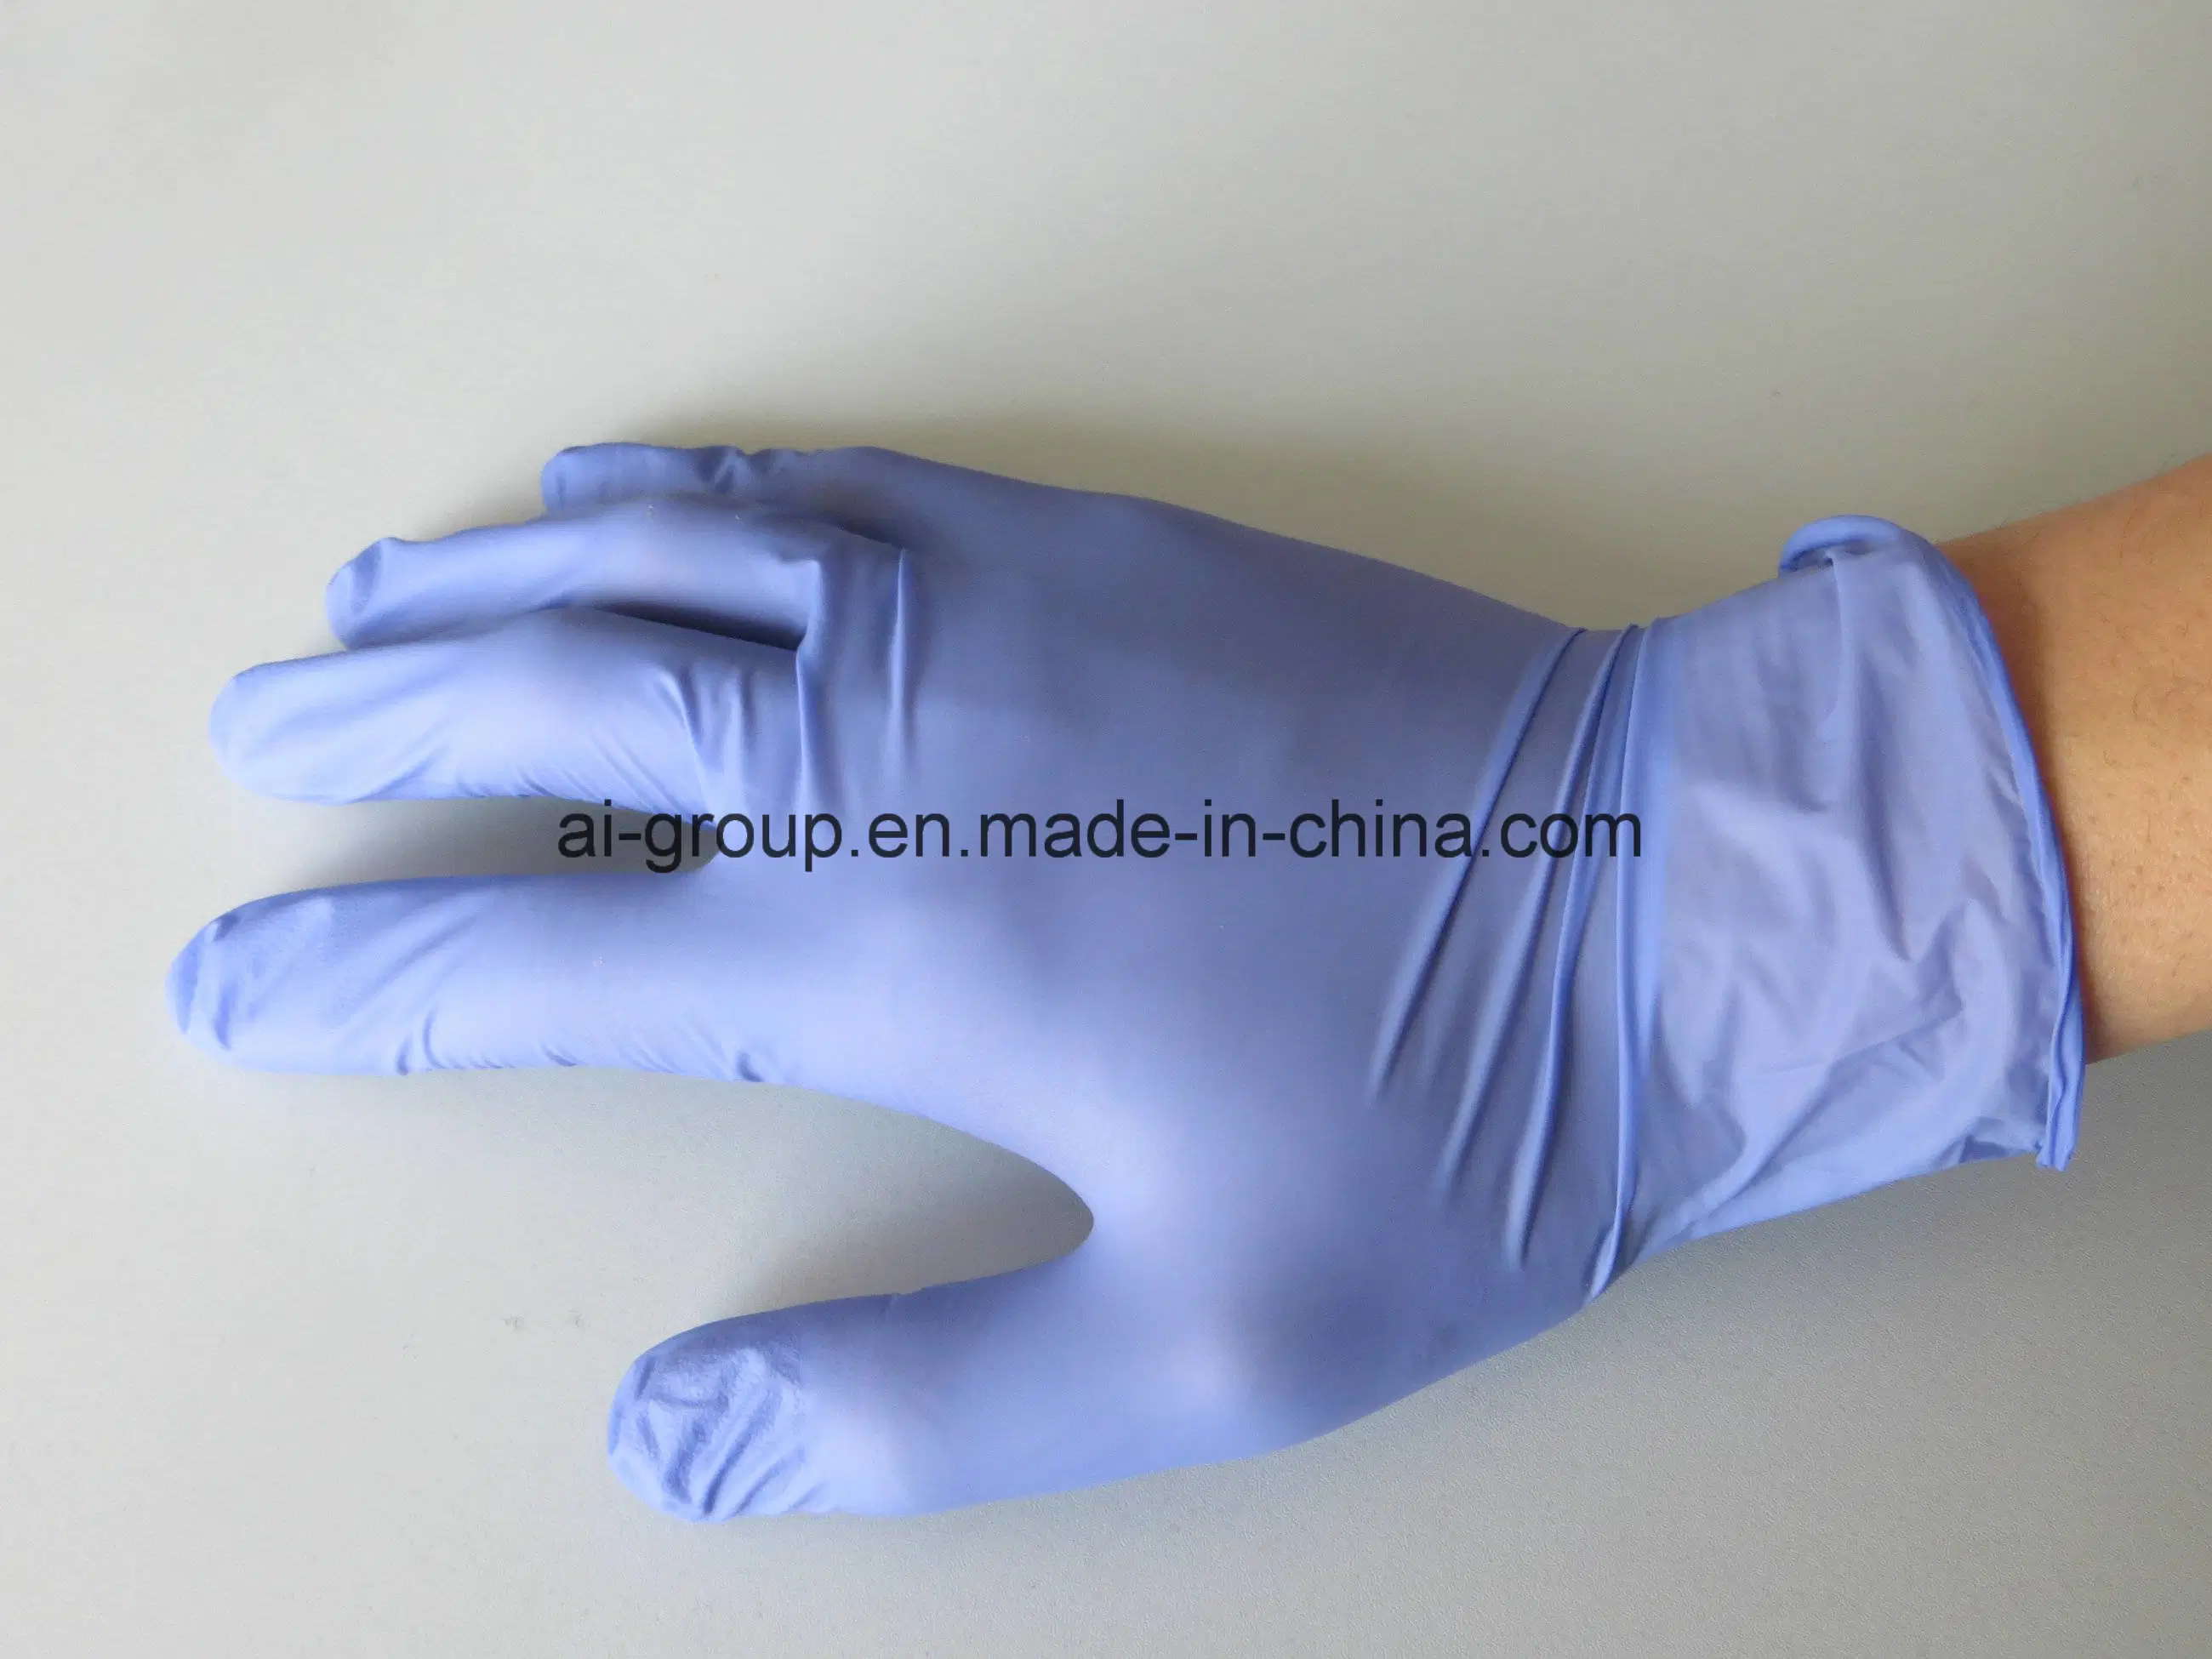 Purple Nitril Exam Großhandel Einweg Latex Vinyl Sicherheit Prüfung Schutz Handschuh puderfrei oder mit USP-resorbierbarer Maisstärke gepudert